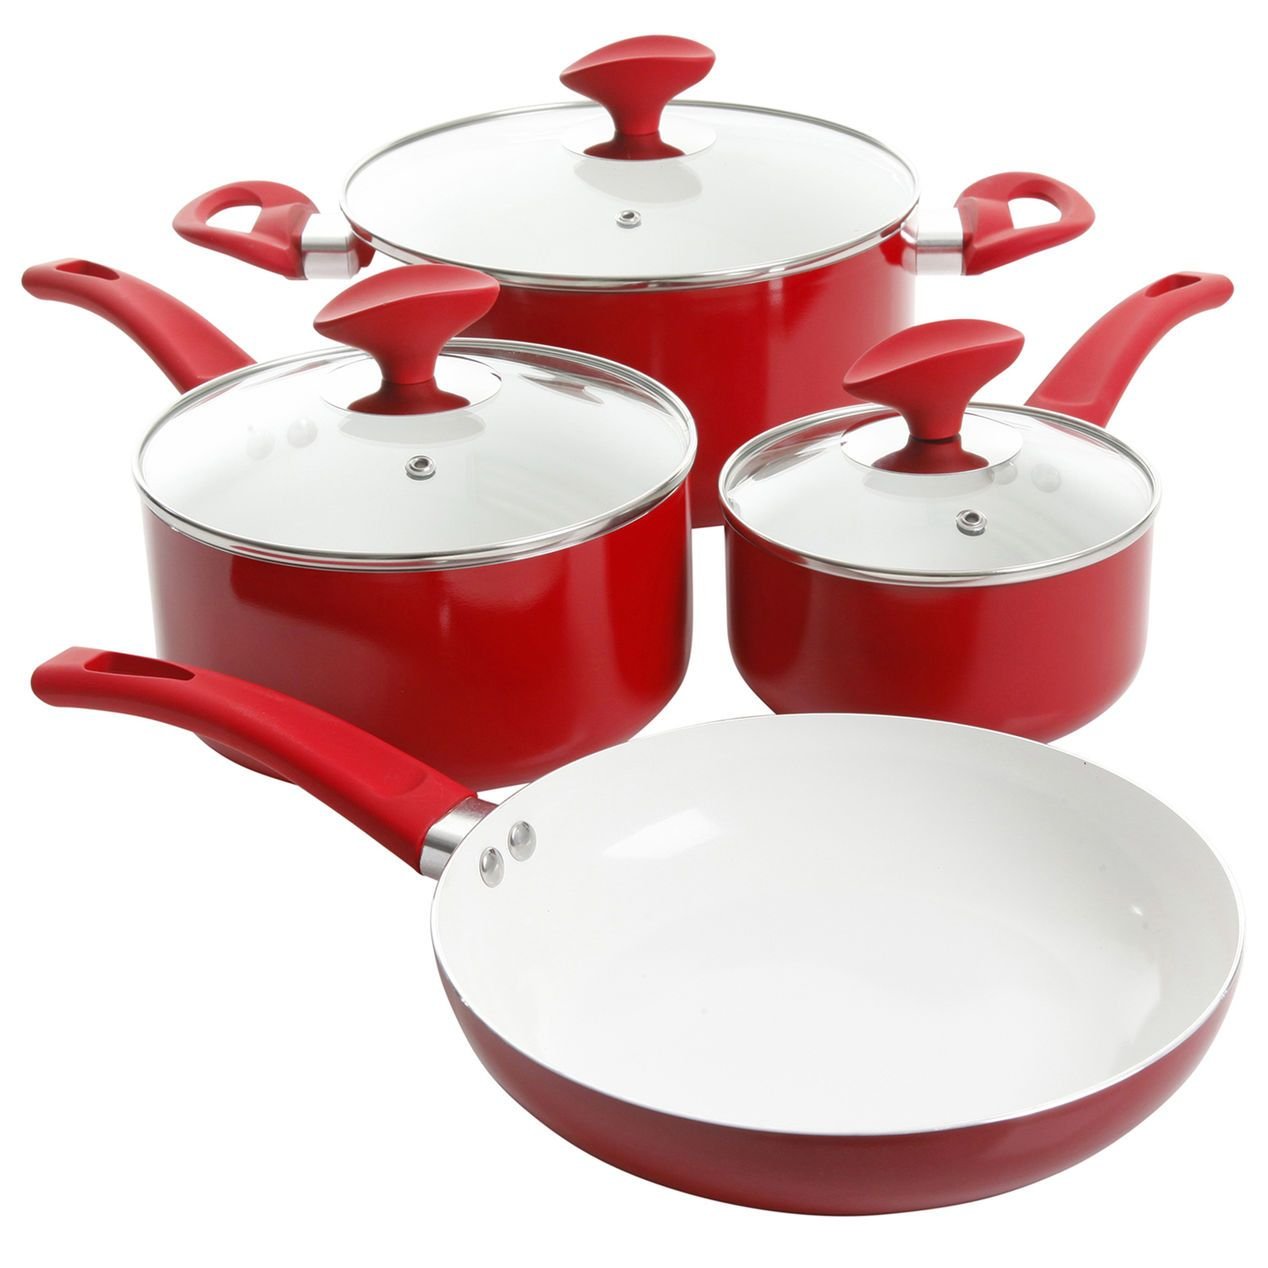 Купить красную посуду. Красная посуда. Красная посуда для кухни. Посуда красного цвета. Бело красная посуда.